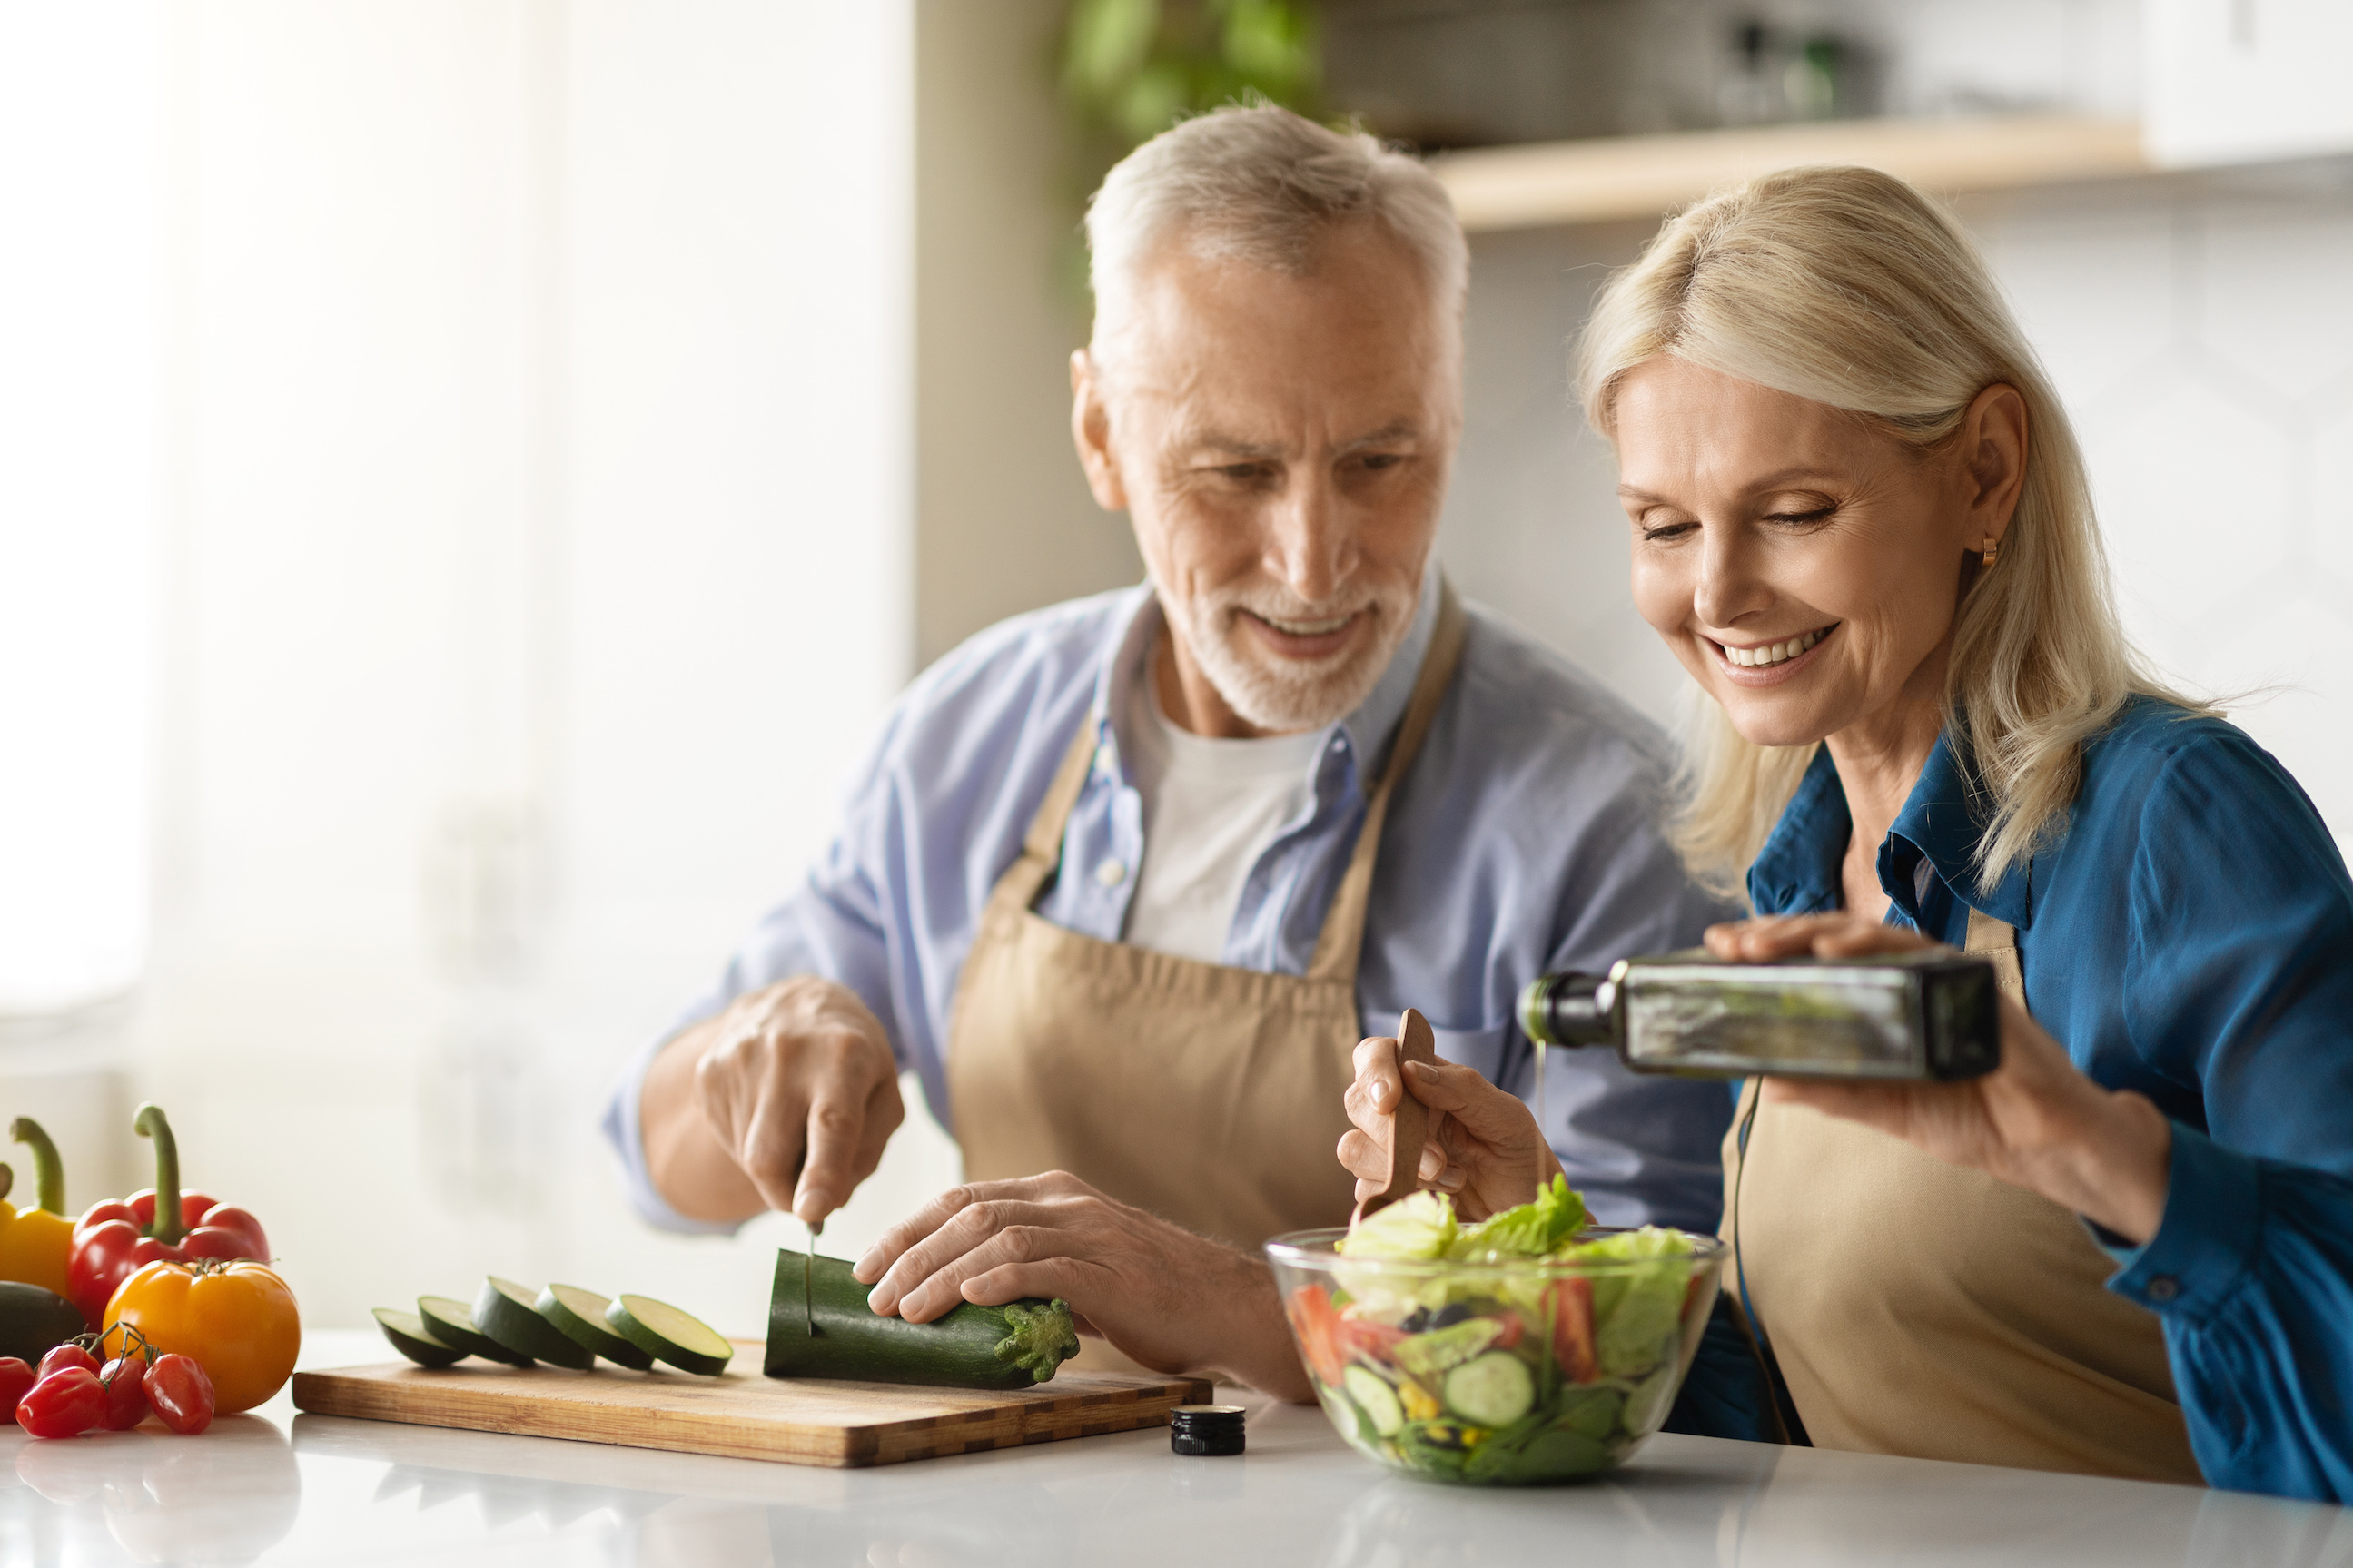 Et si manger léger pouvait nous permettre de vivre plus longtemps en bonne santé ? © Prostock-Studio, Adobe stock